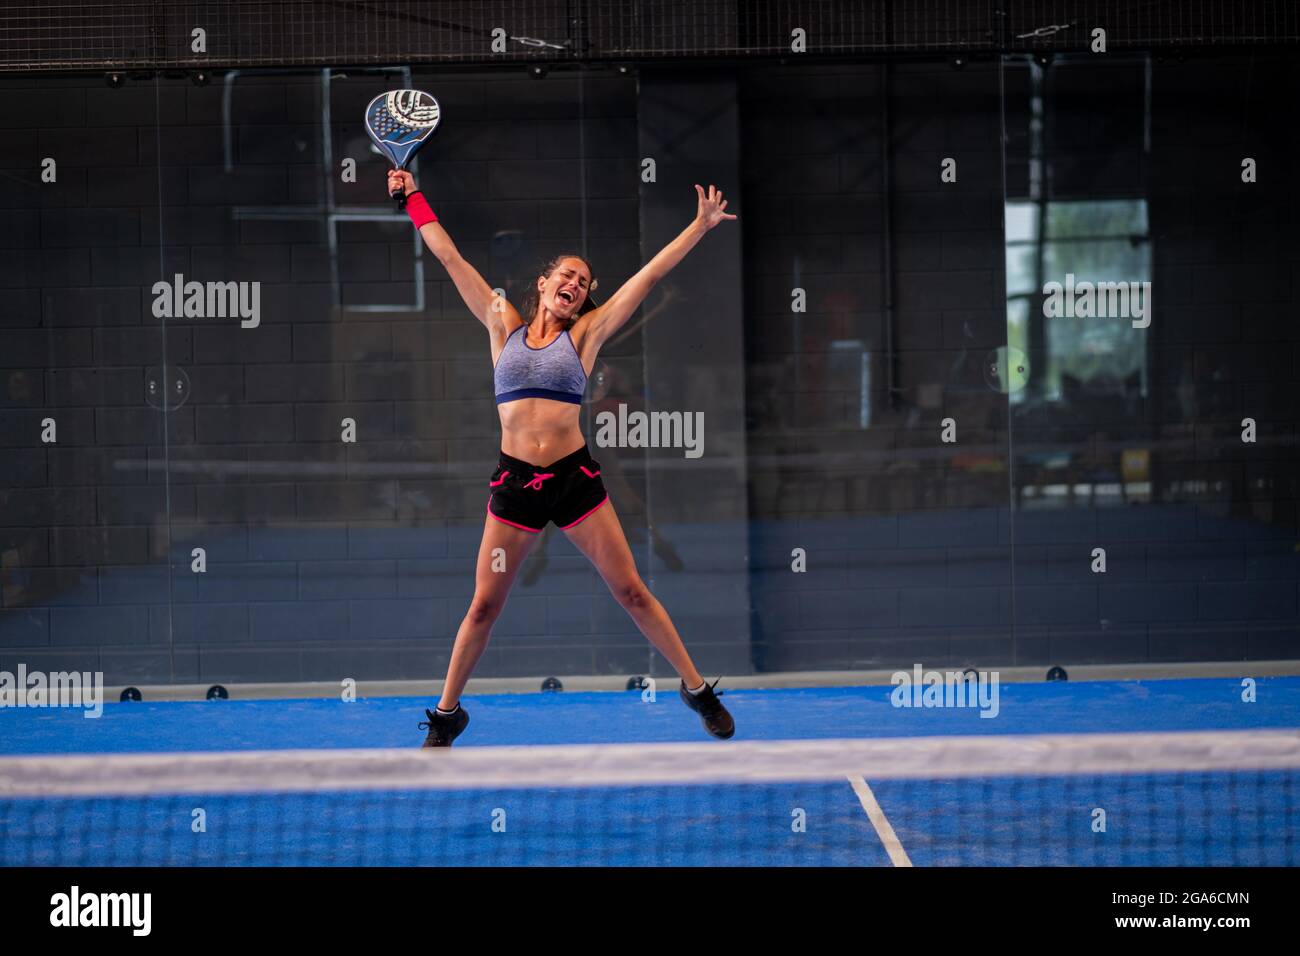 Retrato de una hermosa niña wimmer exultando en una pista de padel de tenis cubierta Foto de stock